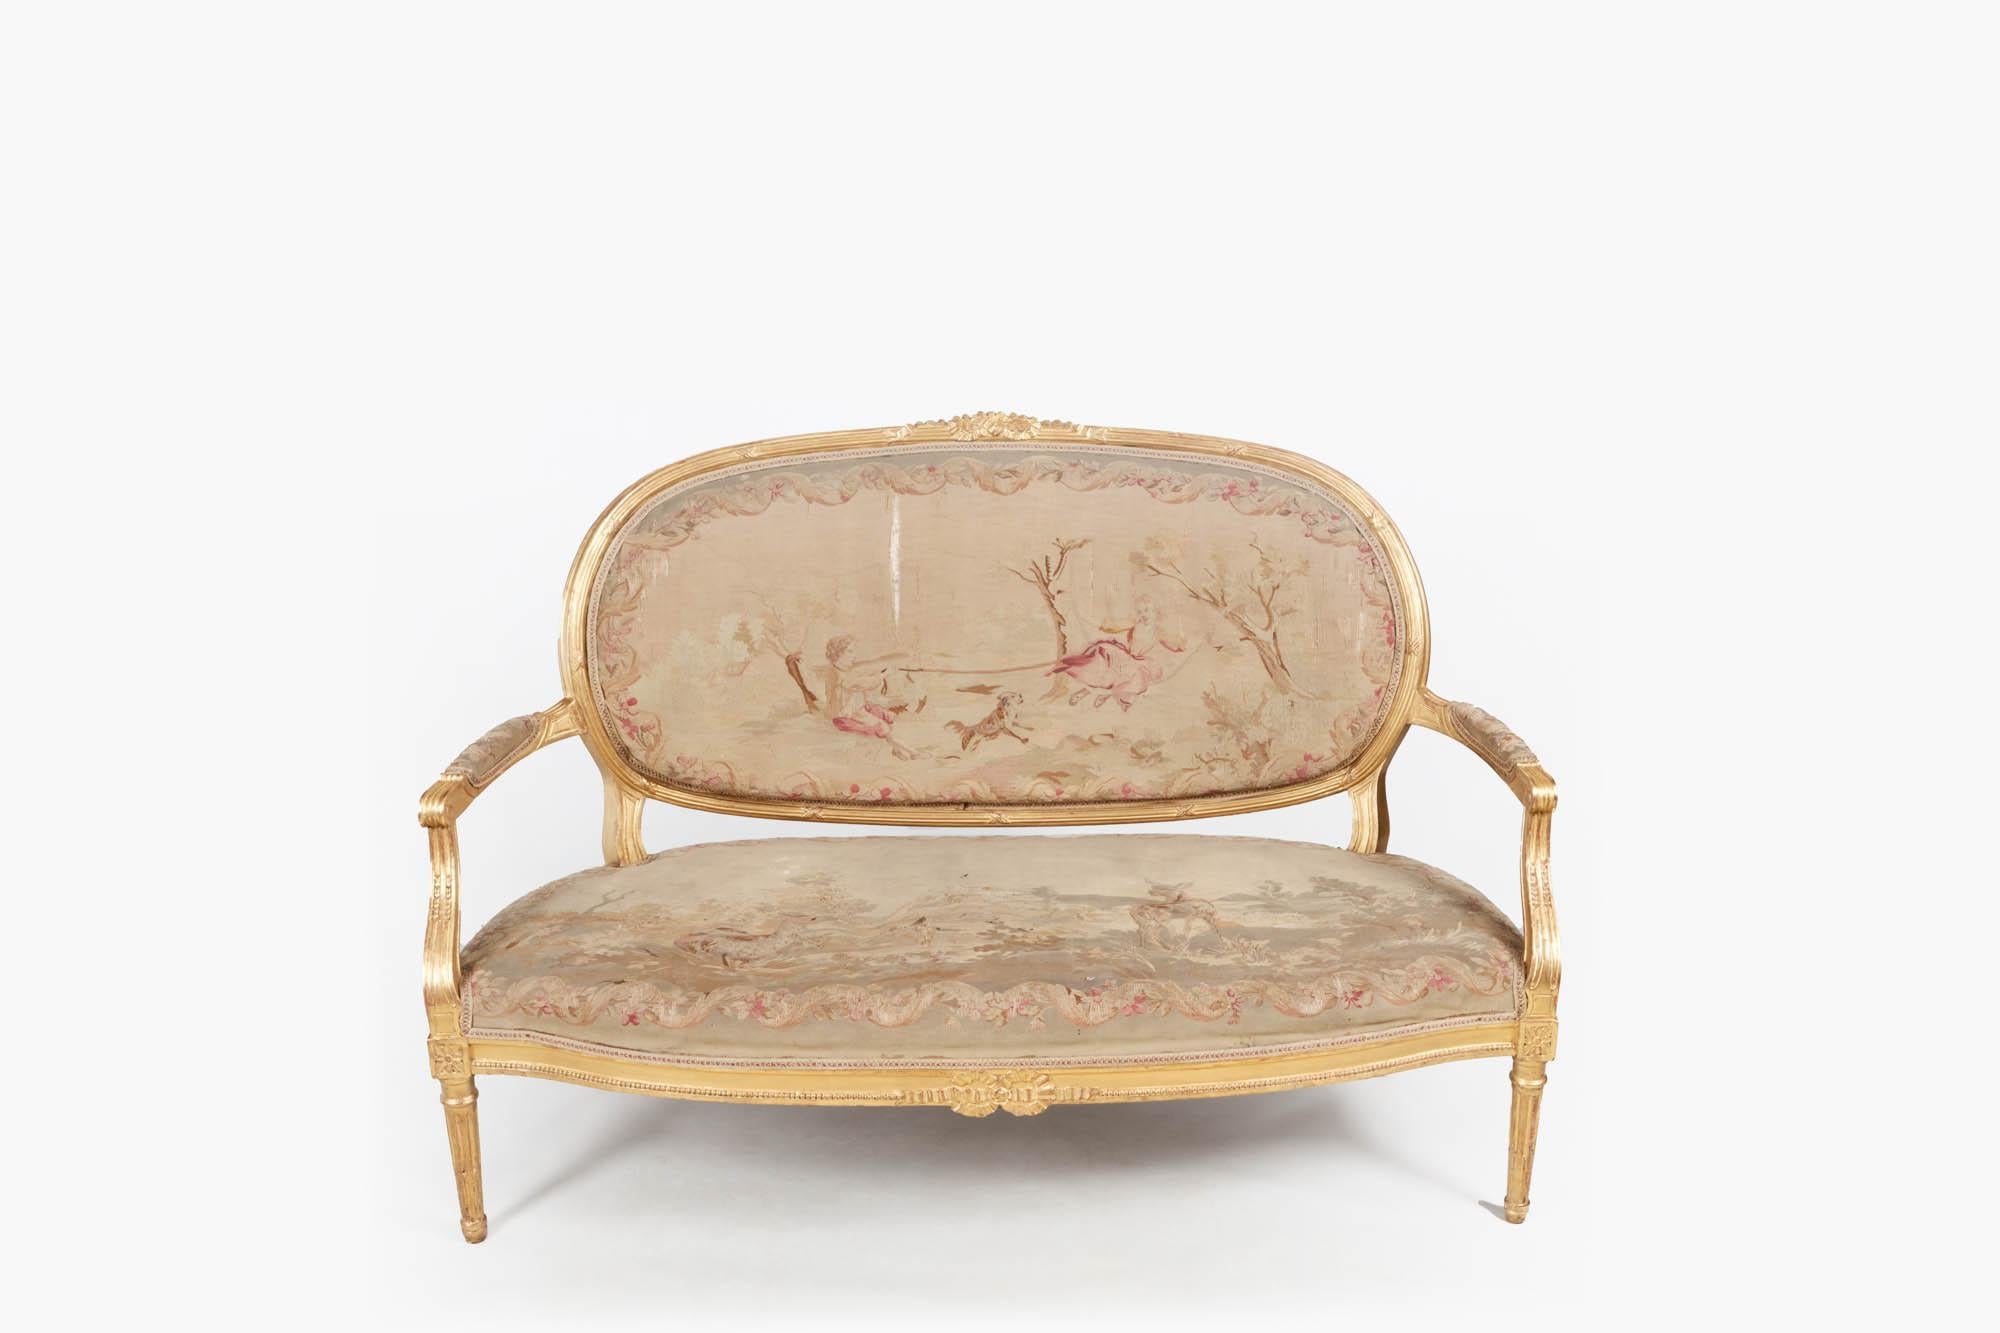 Salon de style Louis XVI du XIXe siècle, sculpté et doré, composé d'un canapé et de quatre fauteuils, tous recouverts d'une tapisserie d'ameublement.

Le canapé, dont la structure est en bois doré, présente un dossier ovale sculpté de rubans et